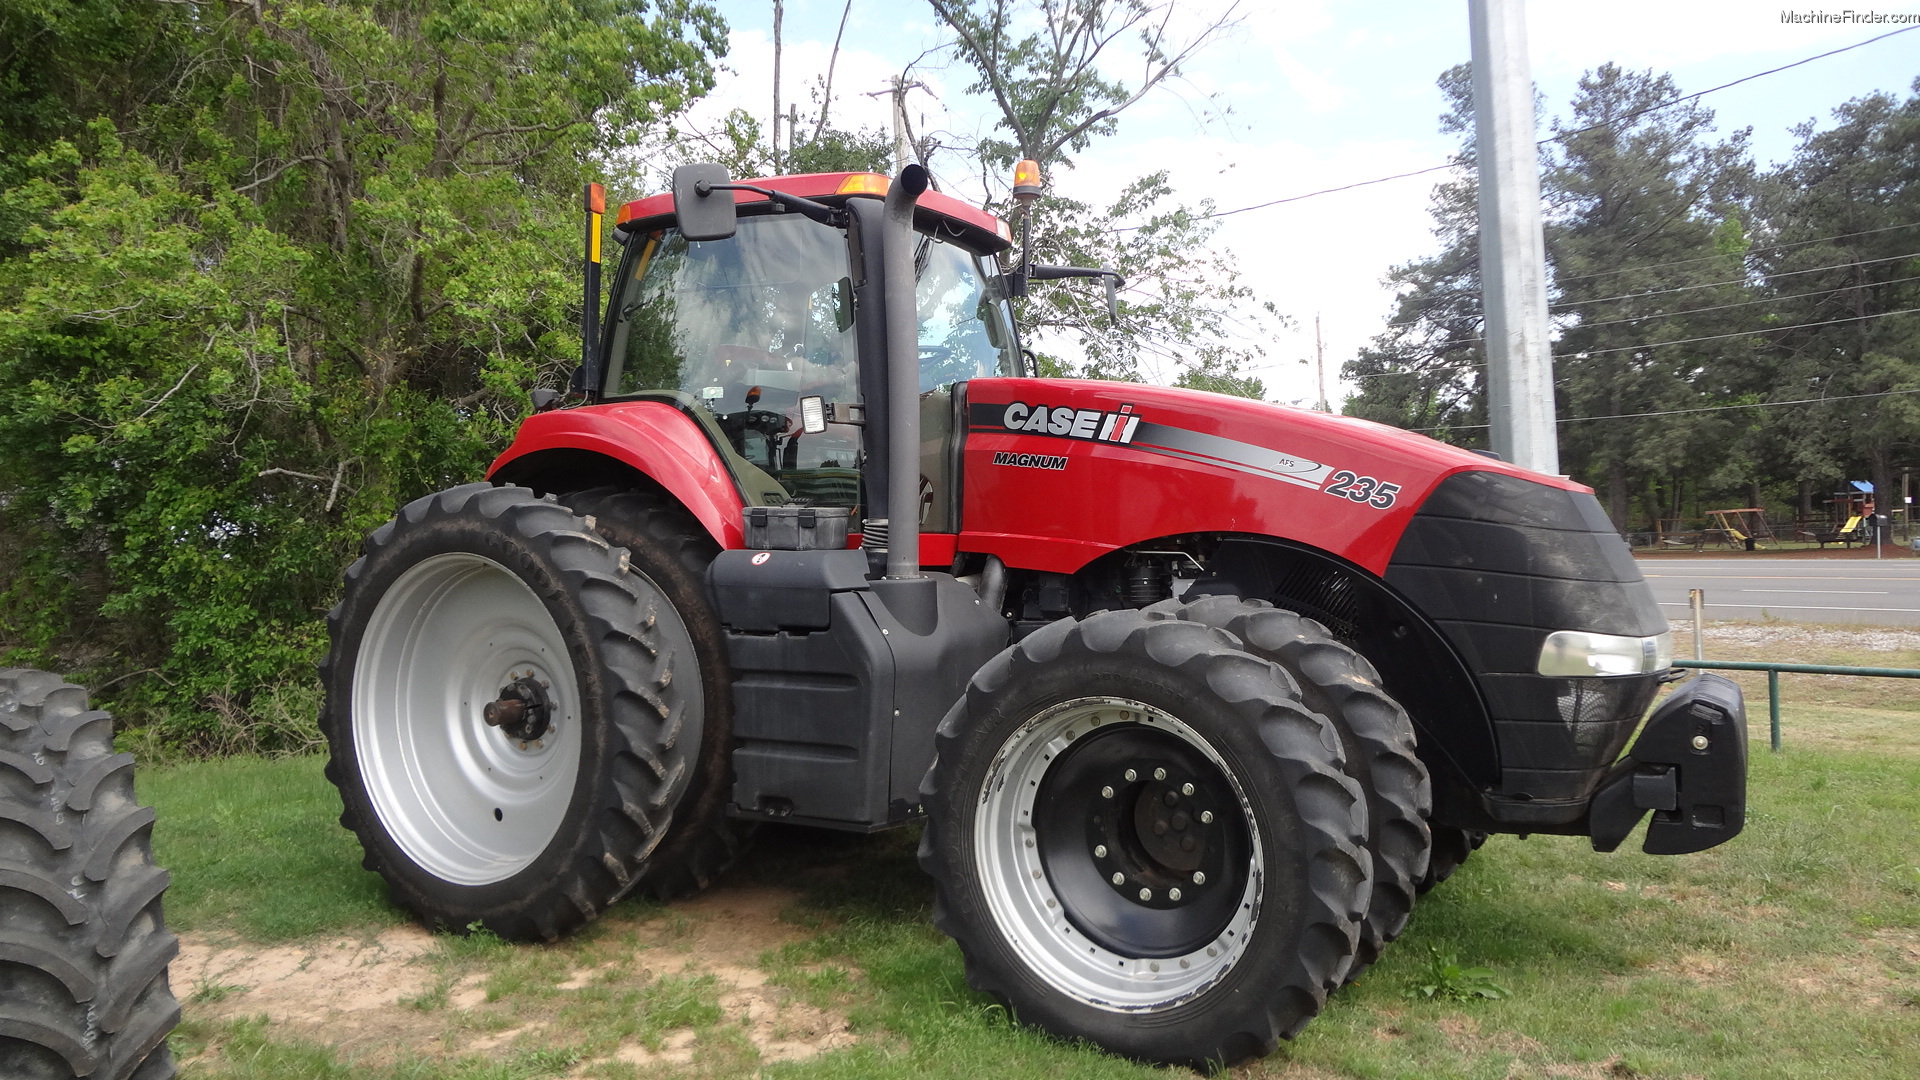 2011 Case IH Magnum 235 Tractors - Row Crop (+100hp) - John Deere ...